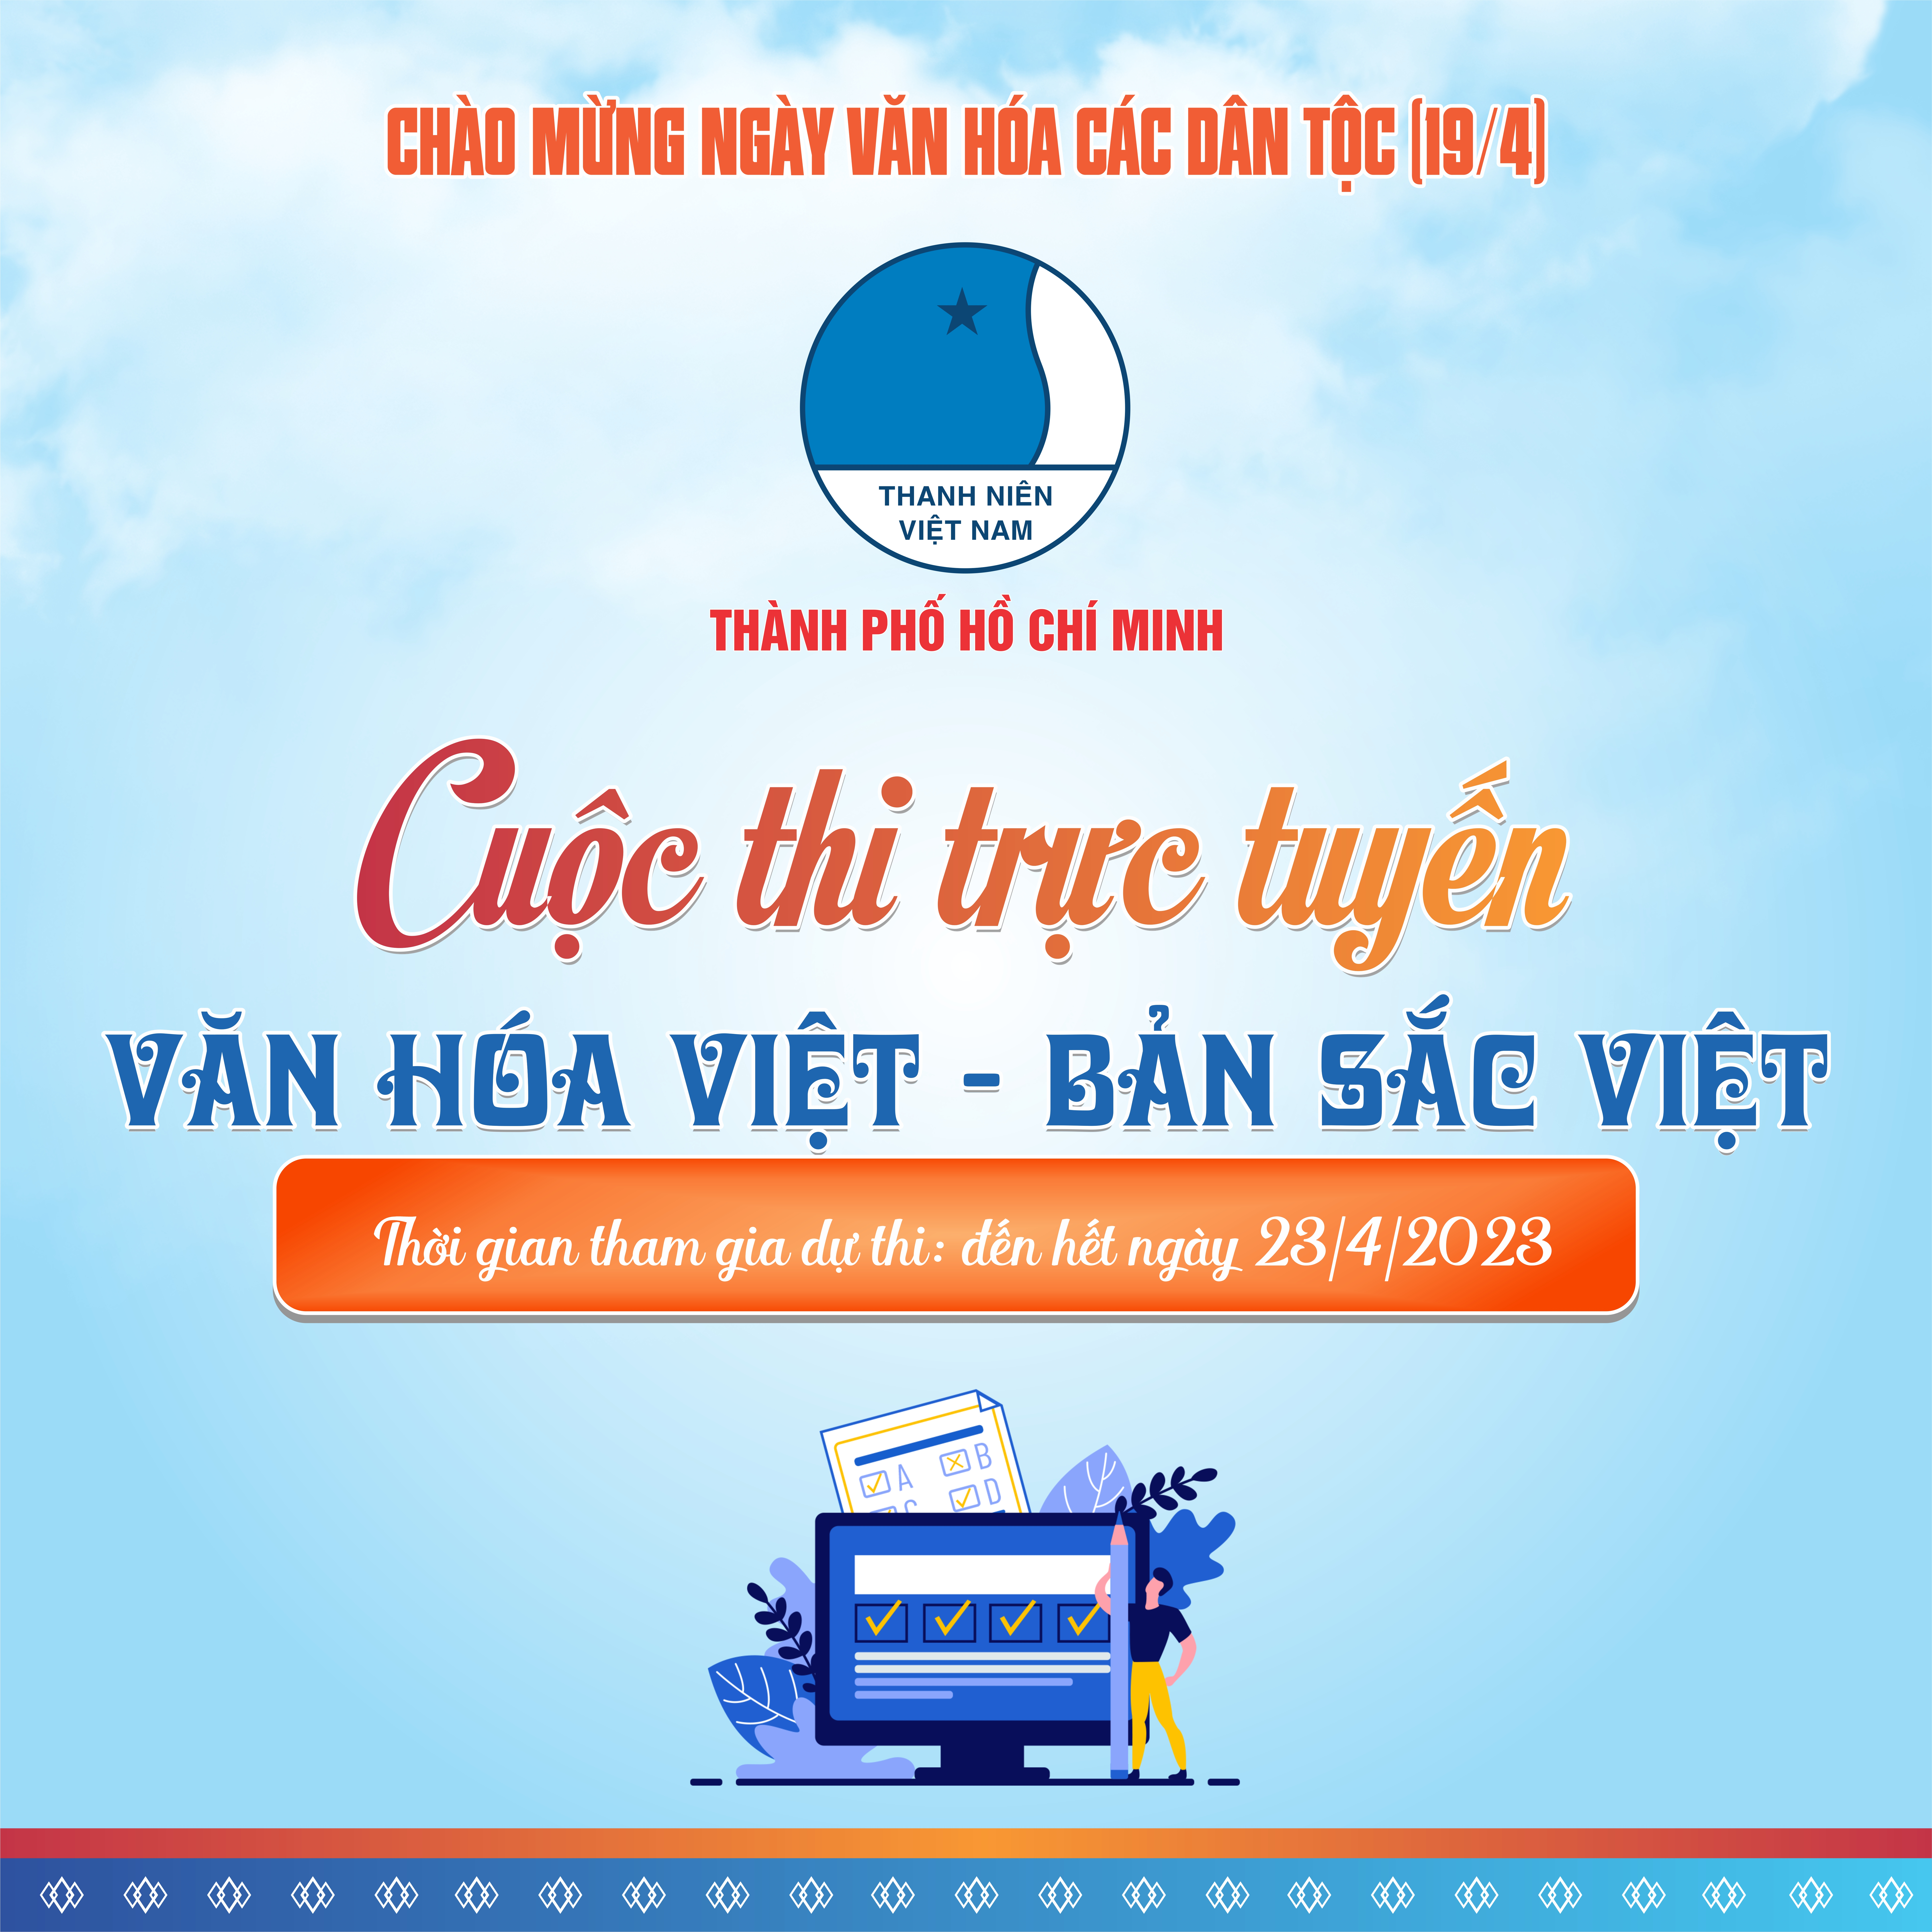 Ngày Văn hóa các Dân tộc Việt Nam năm 2023